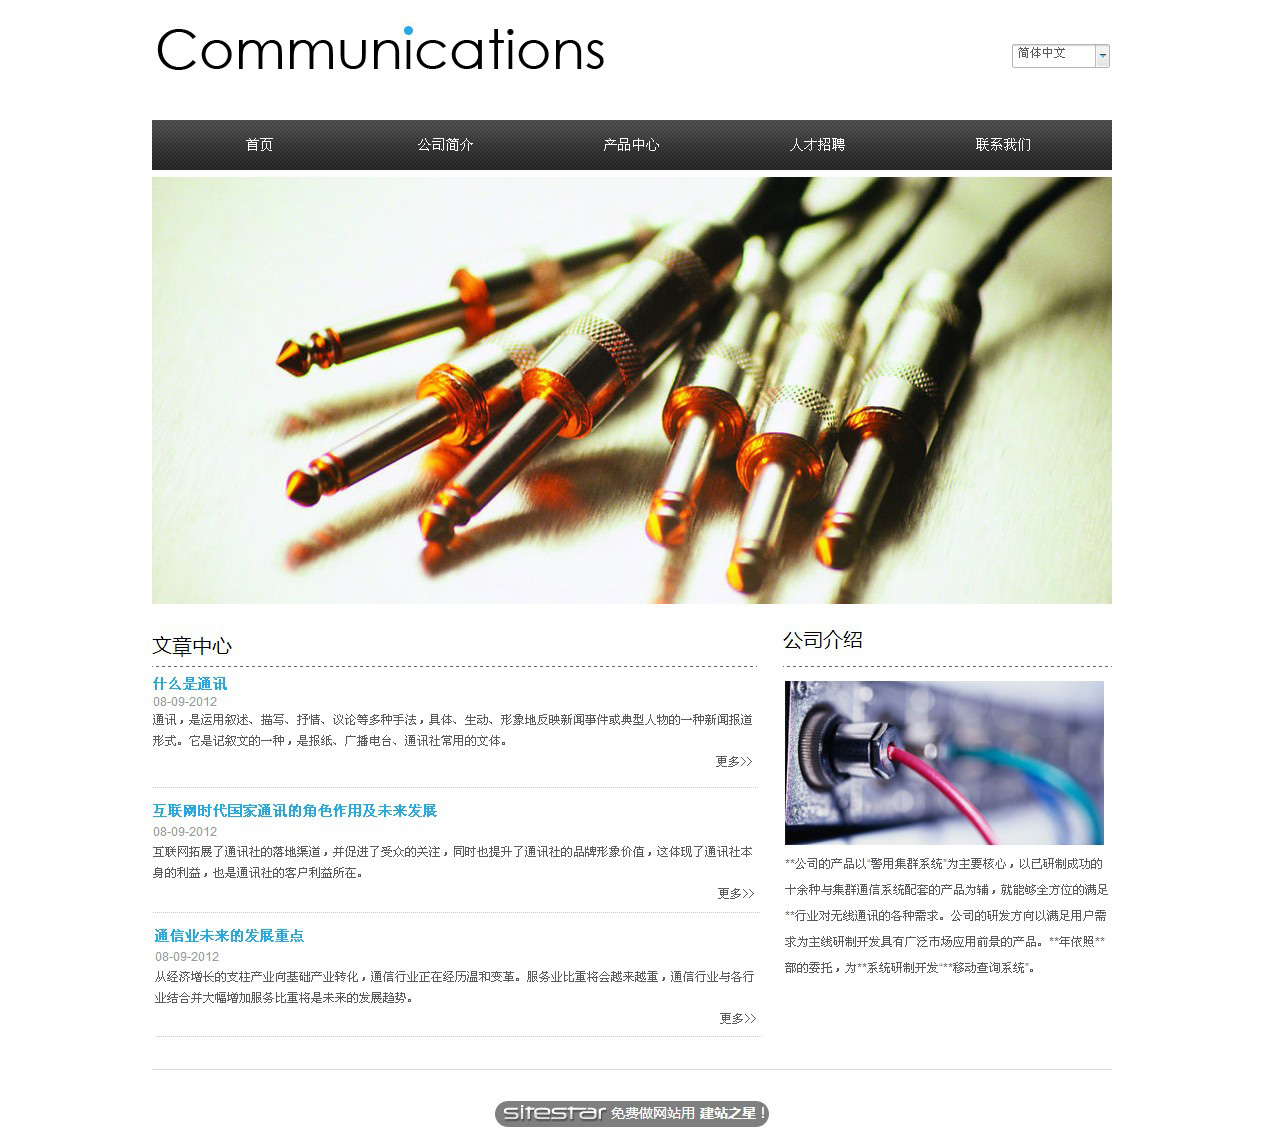 通讯、数码网站模板-communications-4